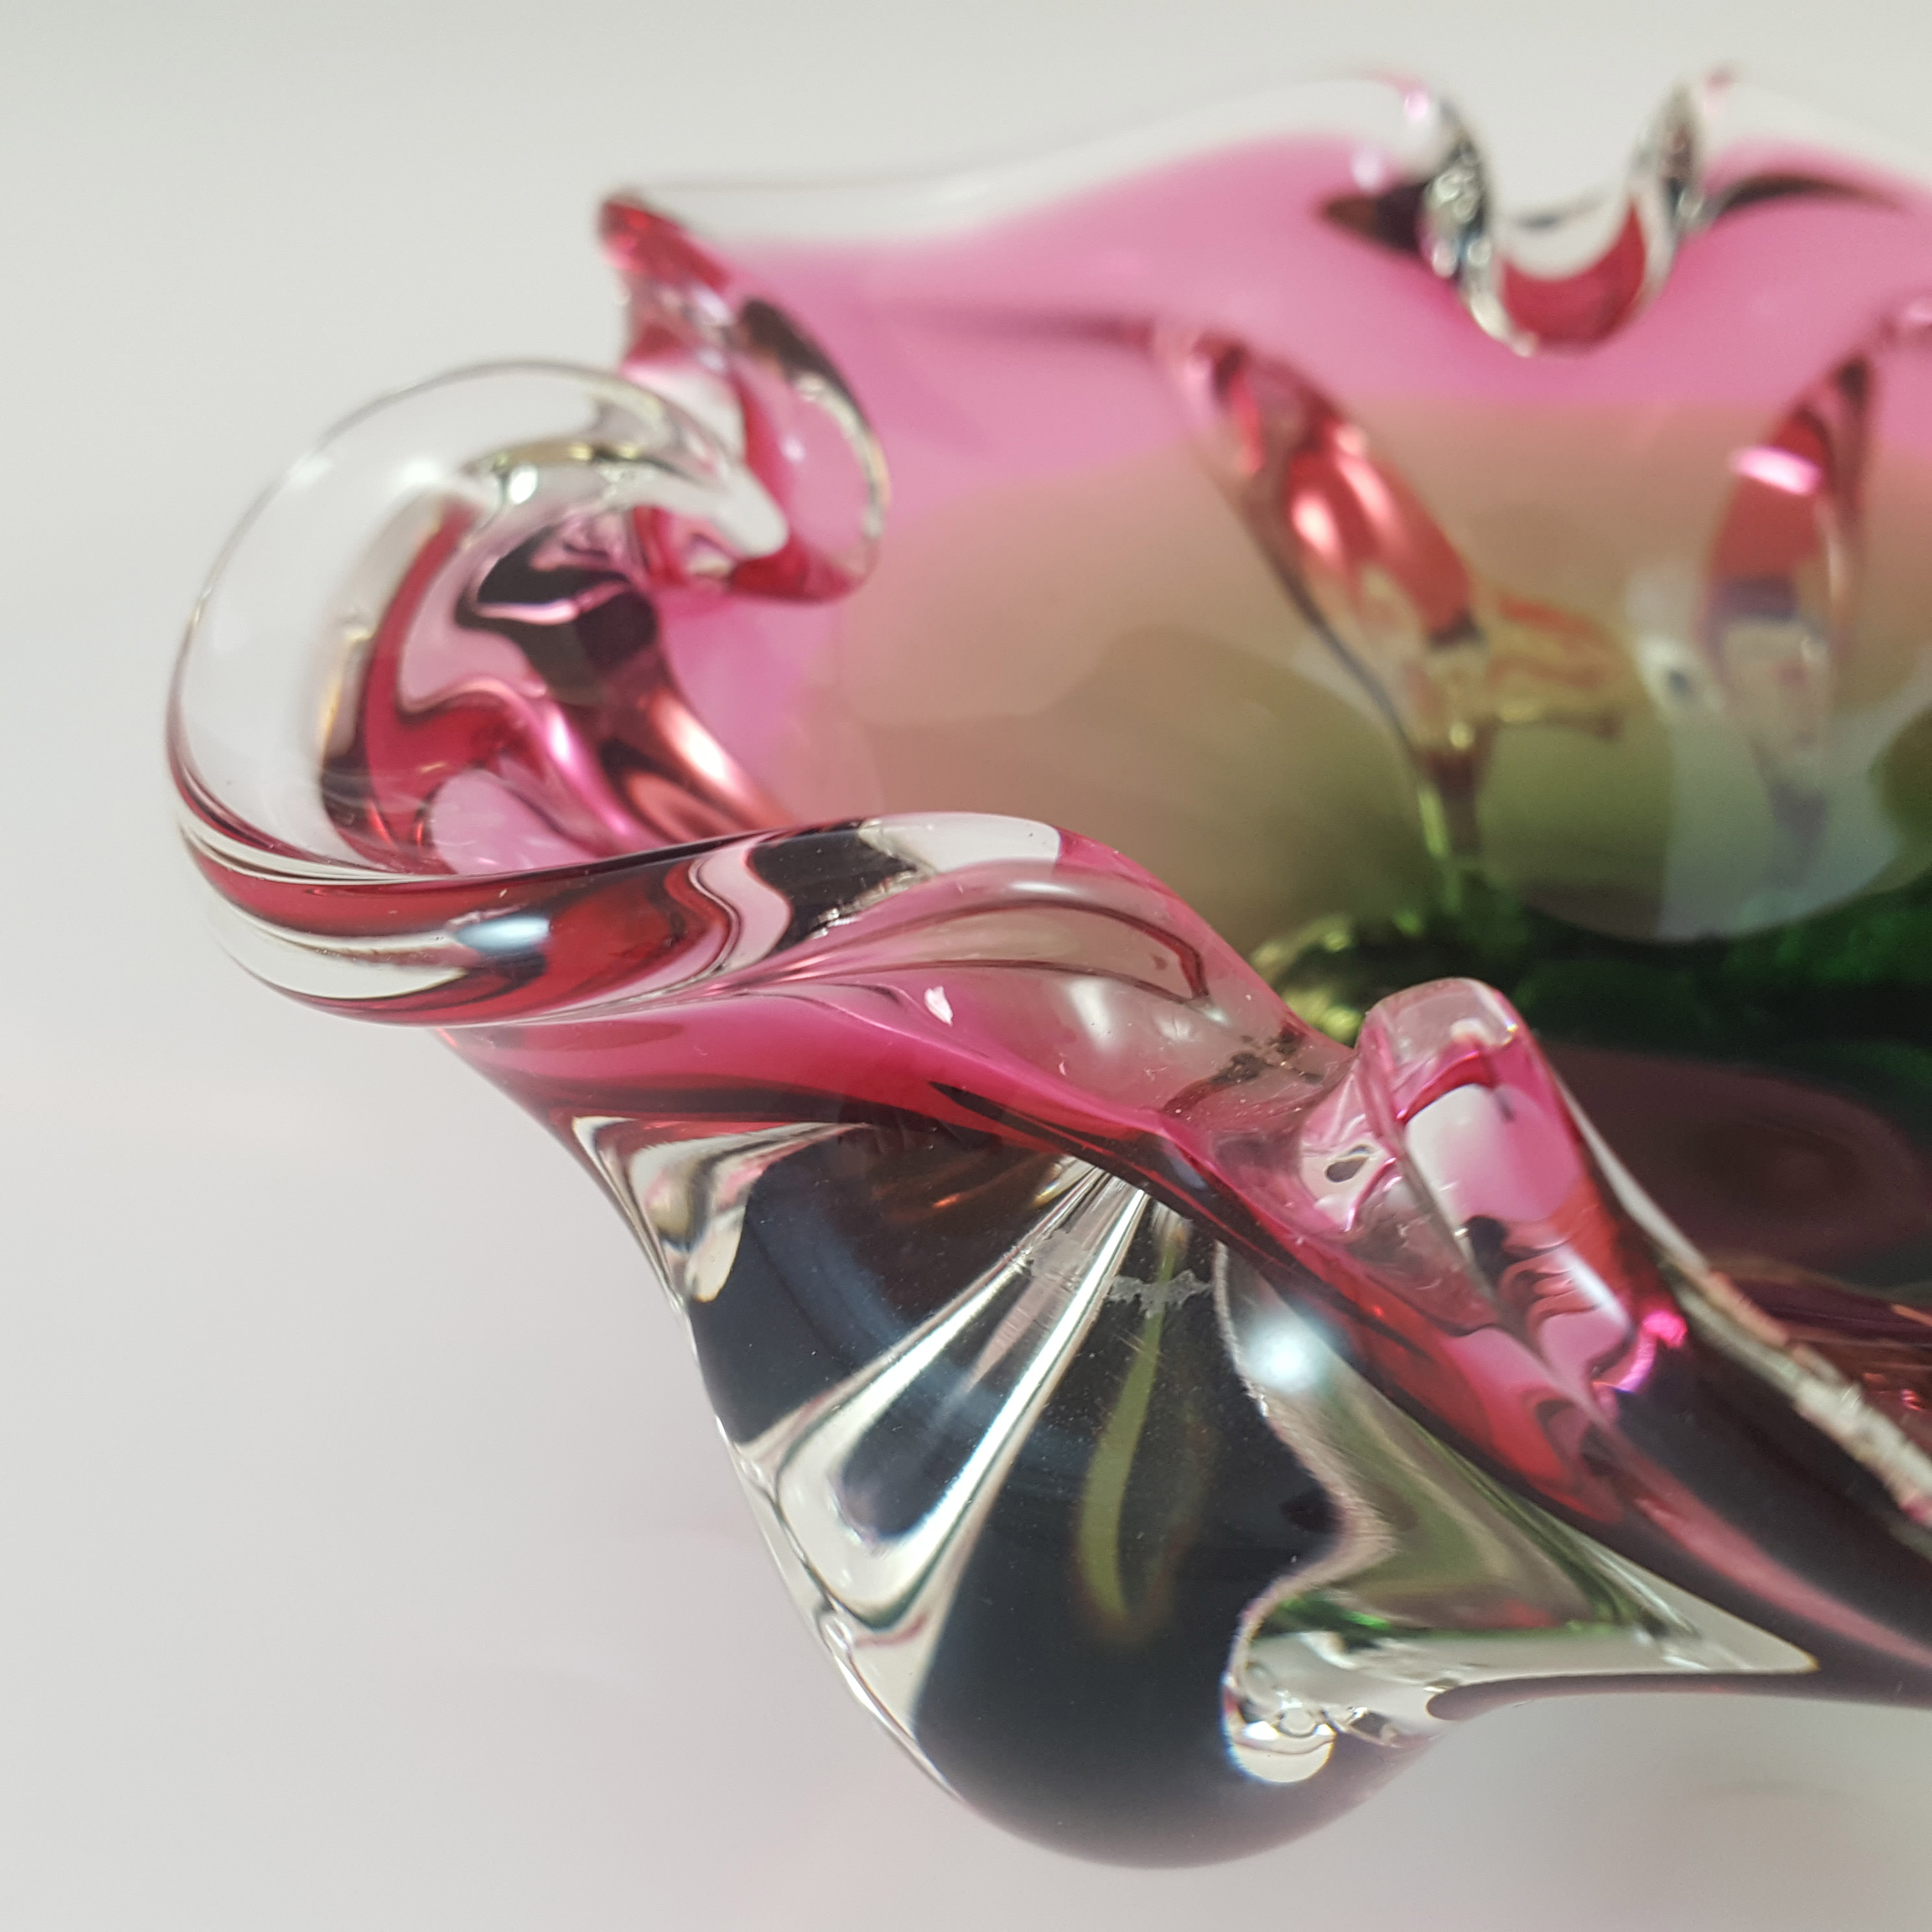 Chřibská #238/5/15 Czech Pink & Green Glass Bowl by Josef Hospodka - Click Image to Close